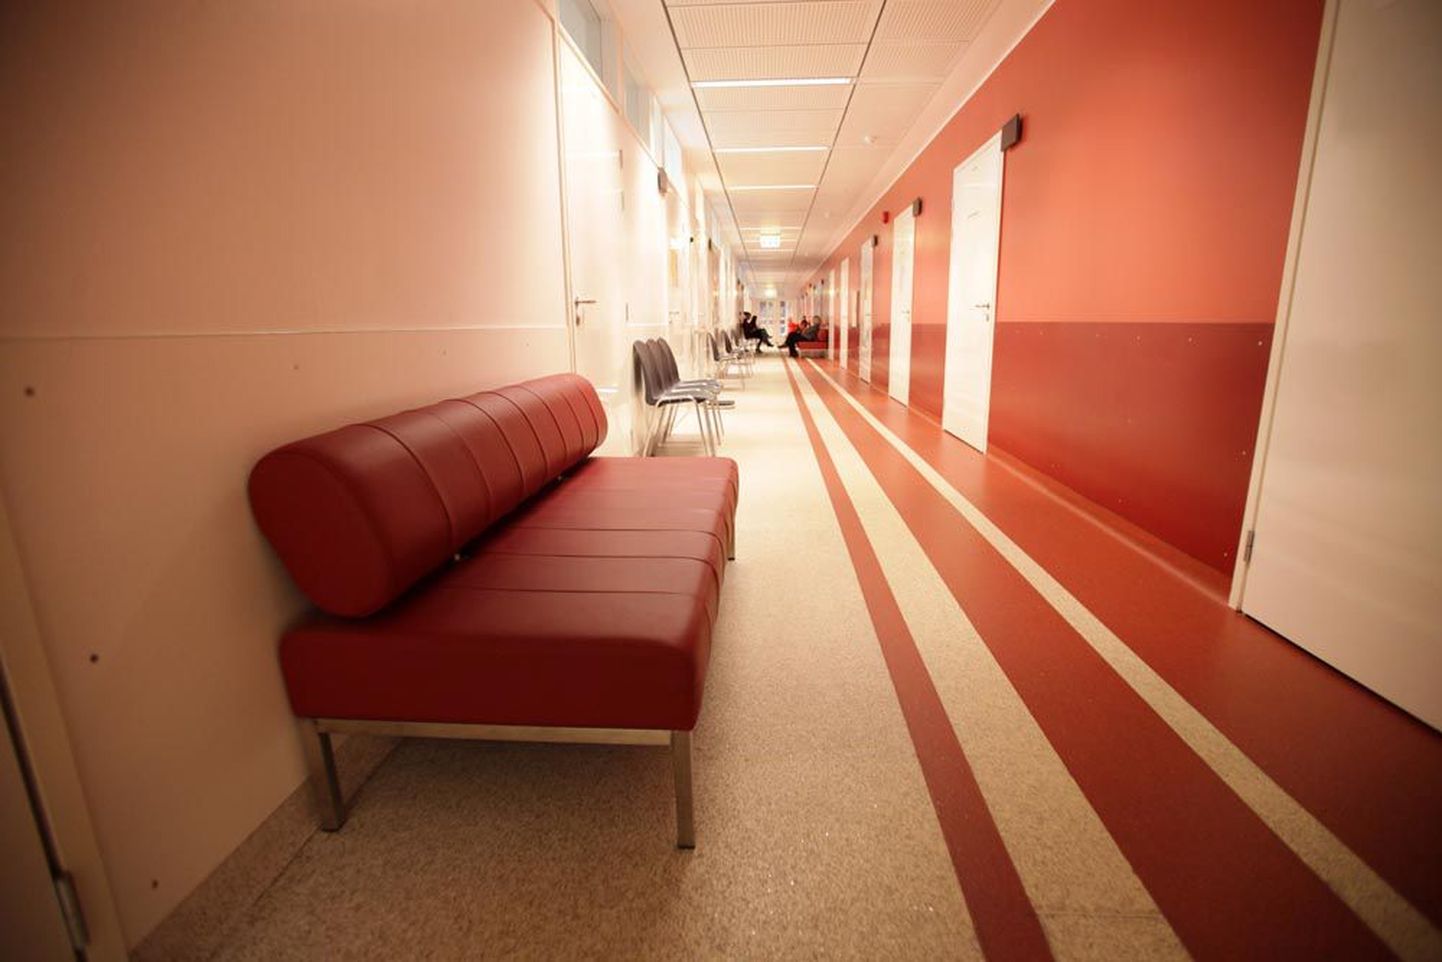 Tartu Ülikooli kliinikumis jäi ära osa ambulatoorsetest vastuvõttudest. Ka naistekliinikumi koridor oli tavapärasest tühjem.